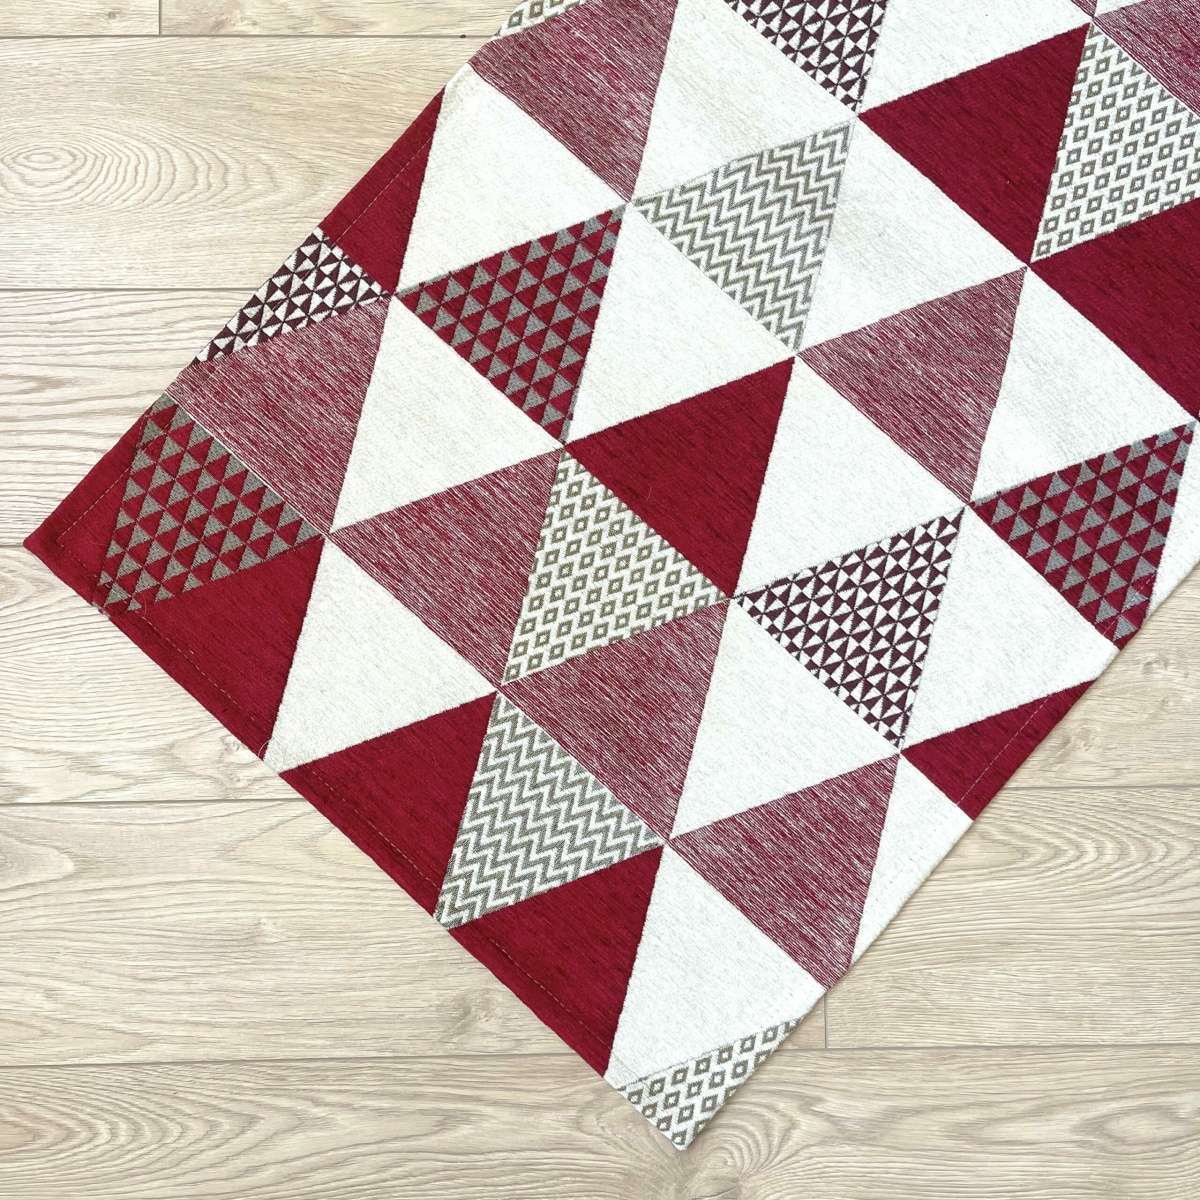 Immagine del prodotto Tappeto Triangoli Rosso Antiscivolo e Lavabile in Lavatrice | Pietro Zanetti Home